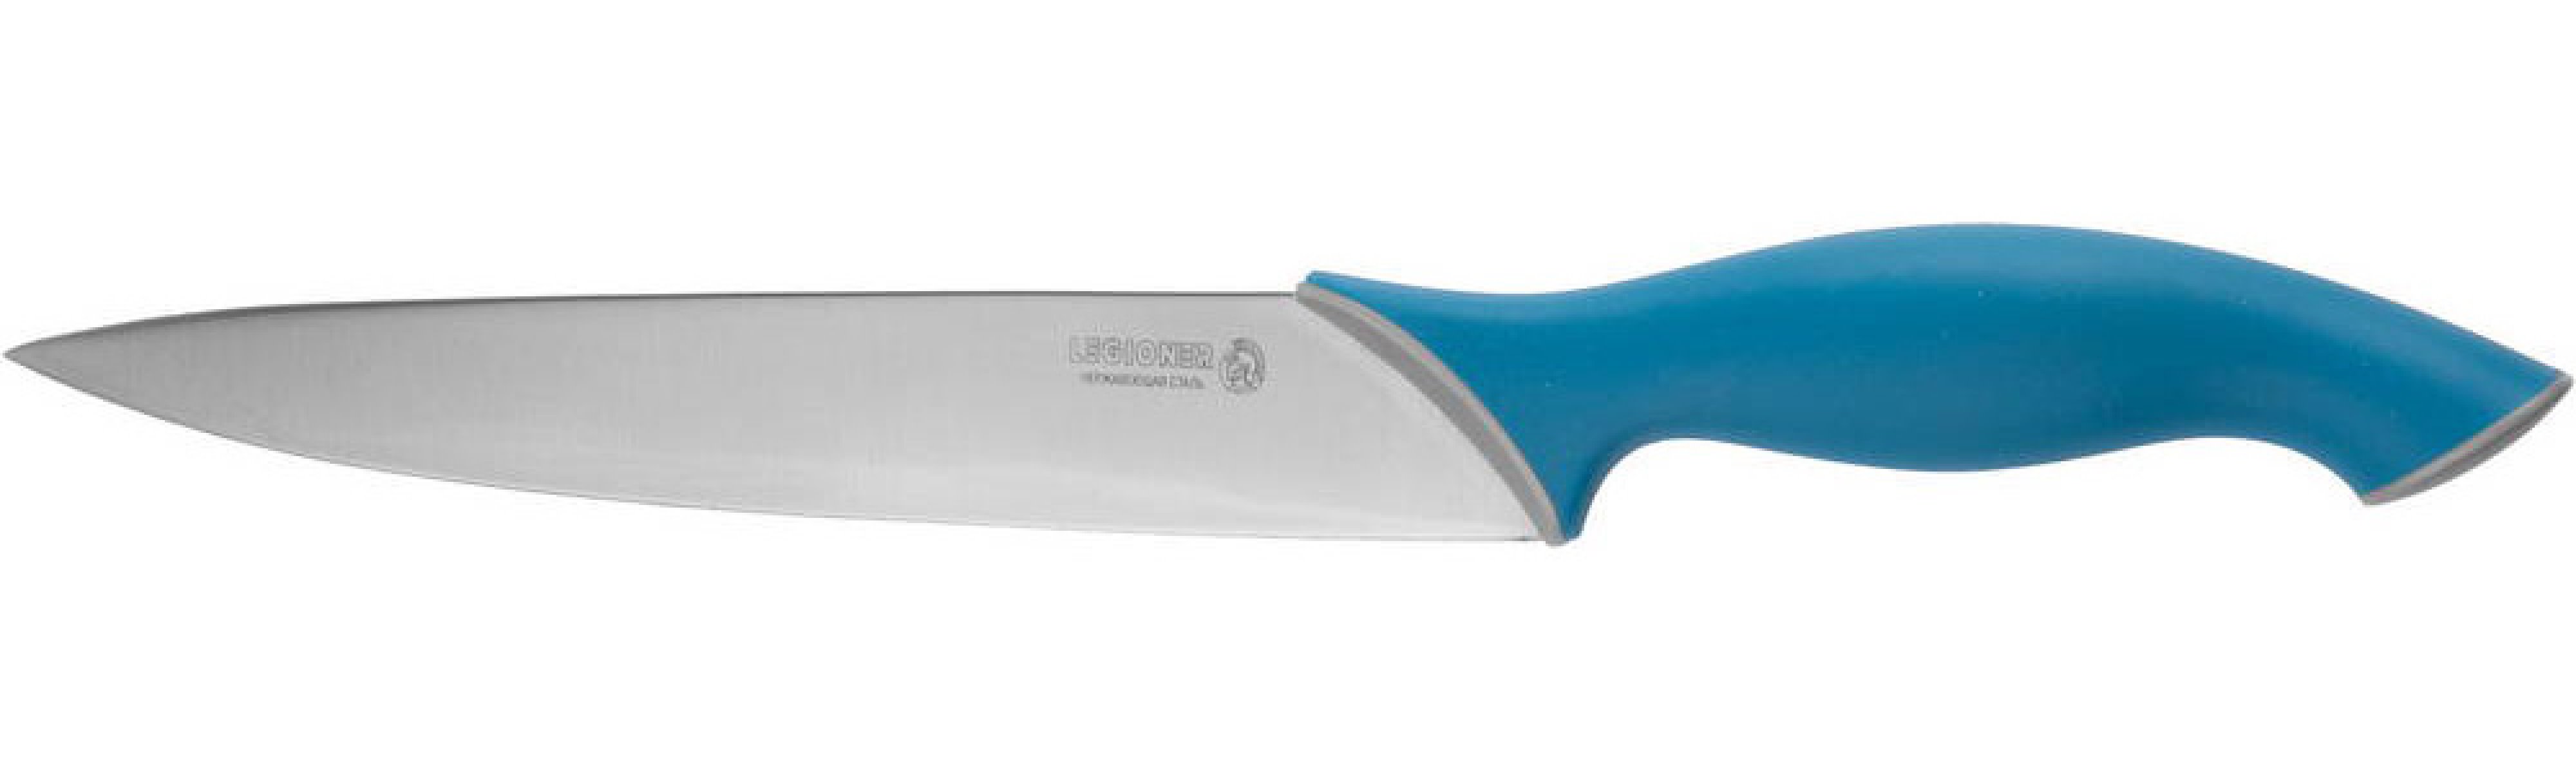 Нарезочный нож LEGIONER Italica 200 мм нержавеющее лезвие эргономичная рукоятка (47963)